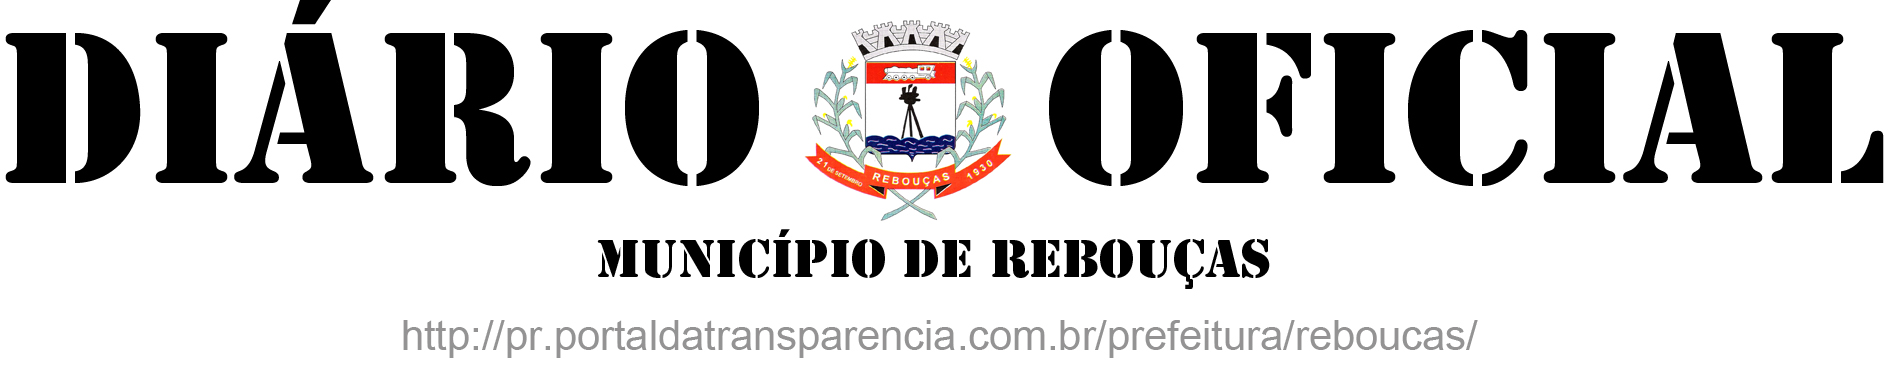 Município de Rebouças CNPJ 77.774.859/0001-82 - Rebouças Paraná DEPARTAMENTO DE RECURSOS HUMANOS Email: rh@reboucas.pr.gov.br rhpmreboucas@yahoo.com.br PORTARIA N.